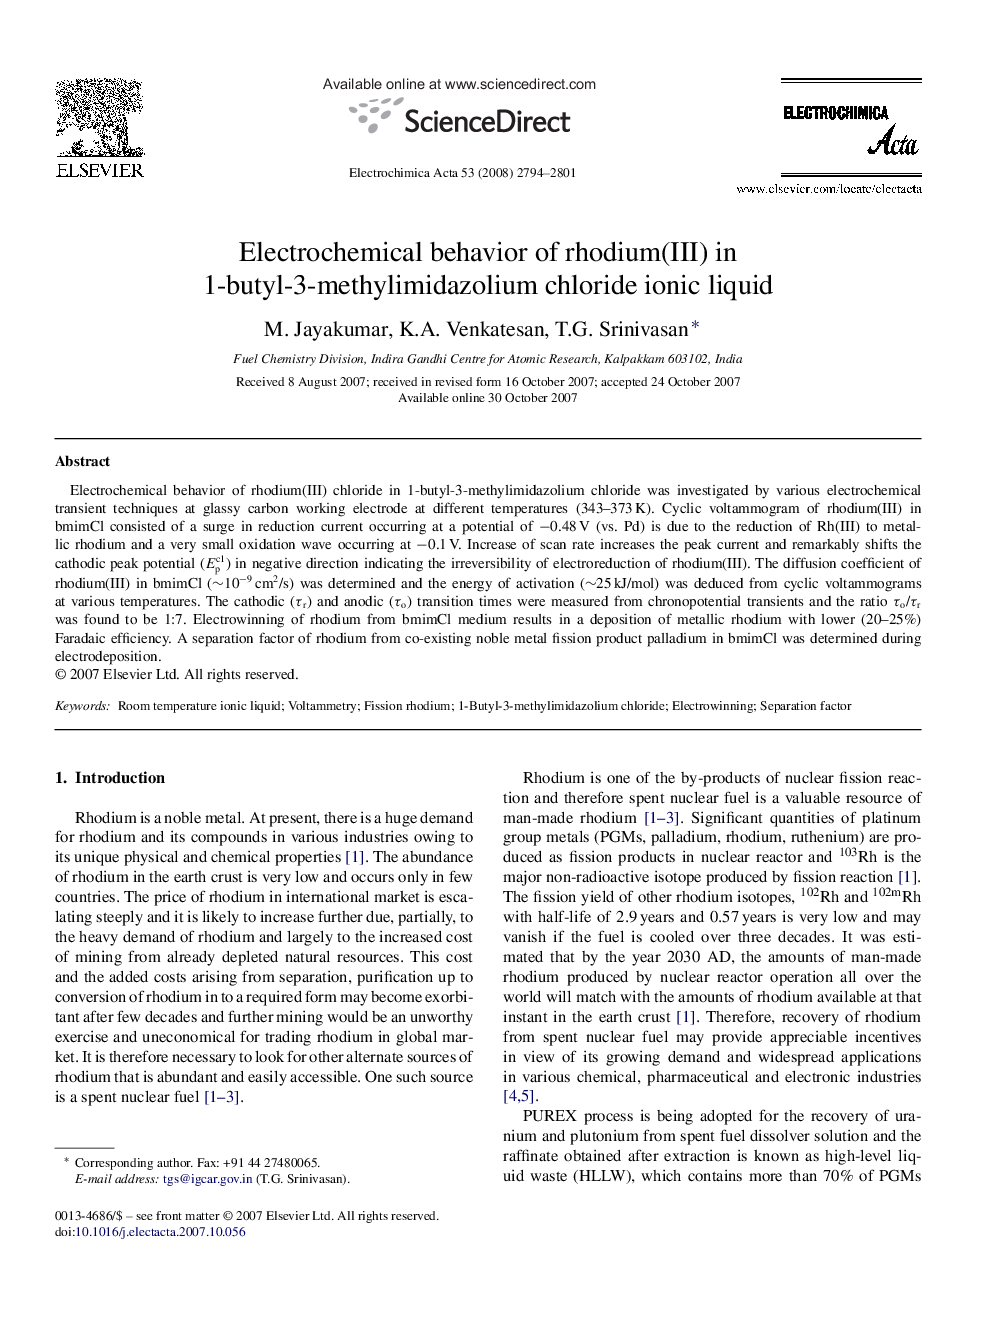 Electrochemical behavior of rhodium(III) in 1-butyl-3-methylimidazolium chloride ionic liquid